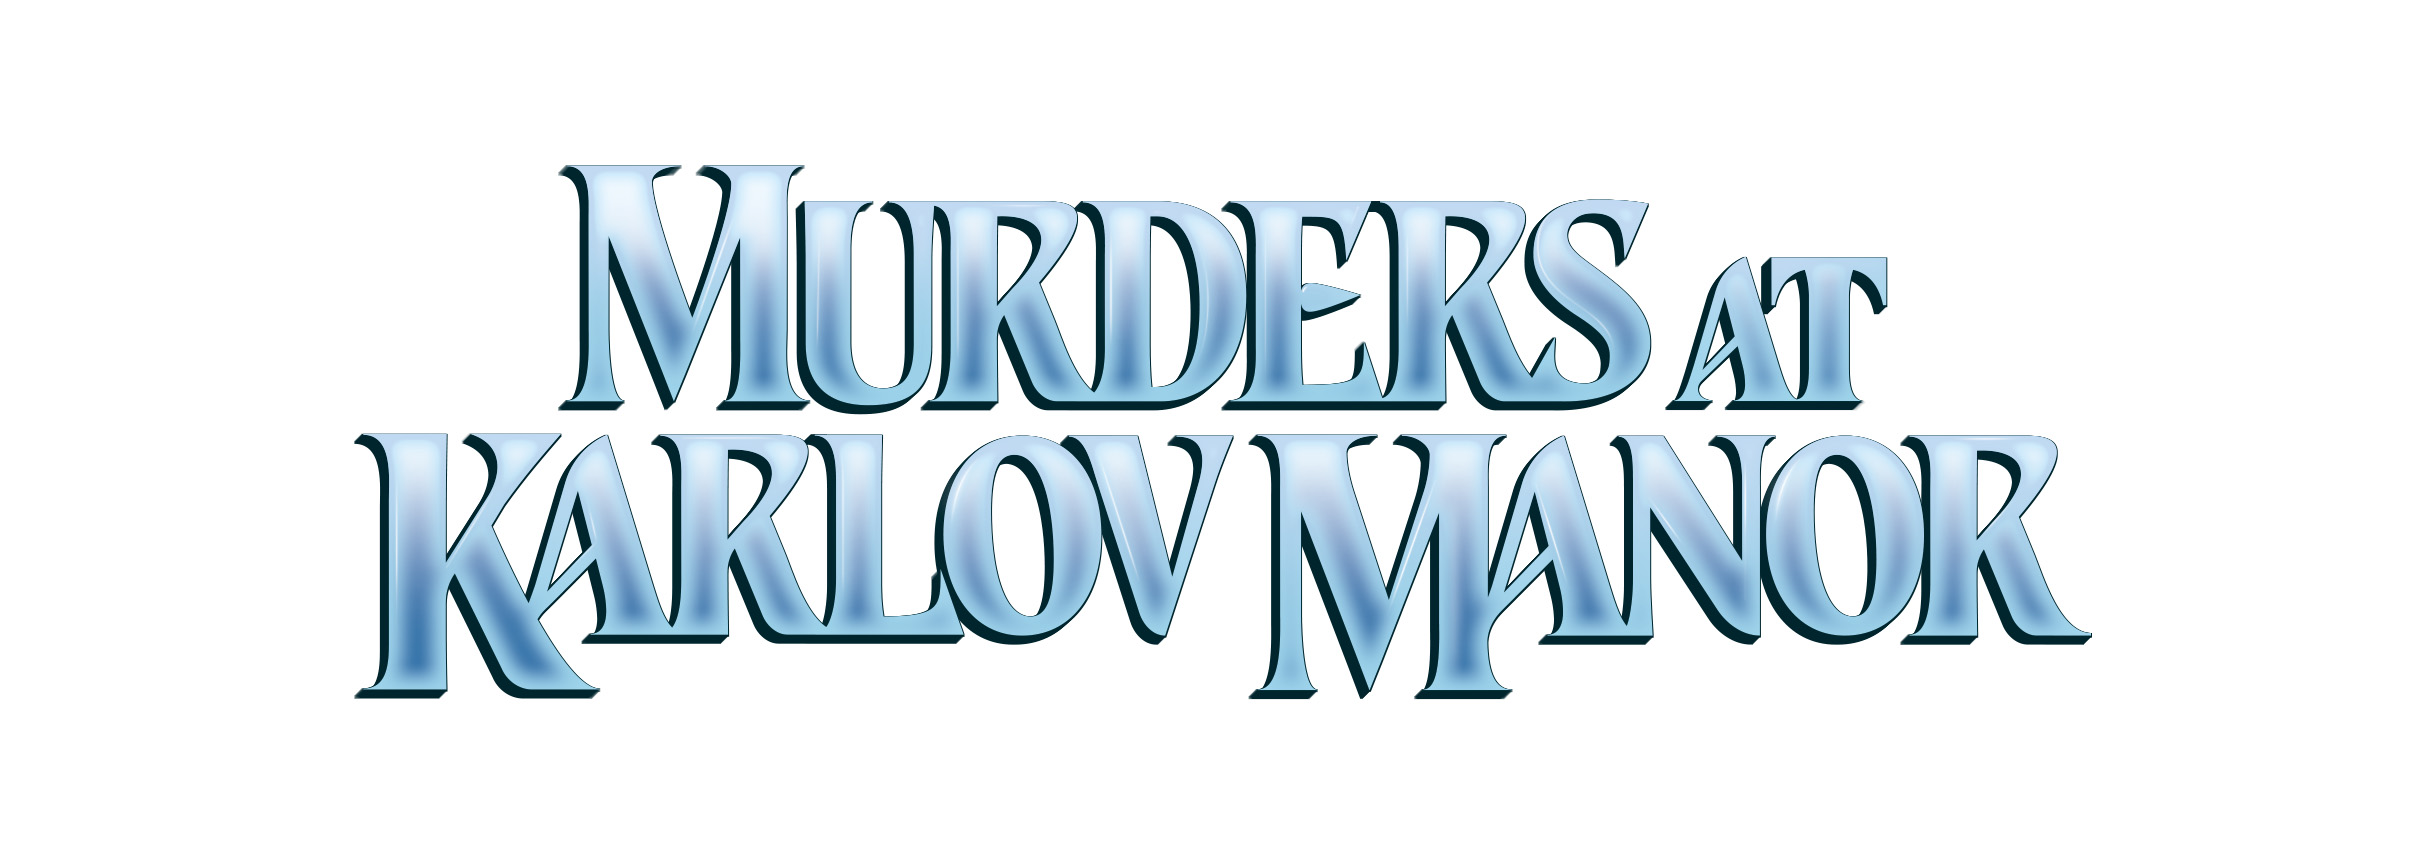 Image of title for MTG Murders at Karlov Mansion